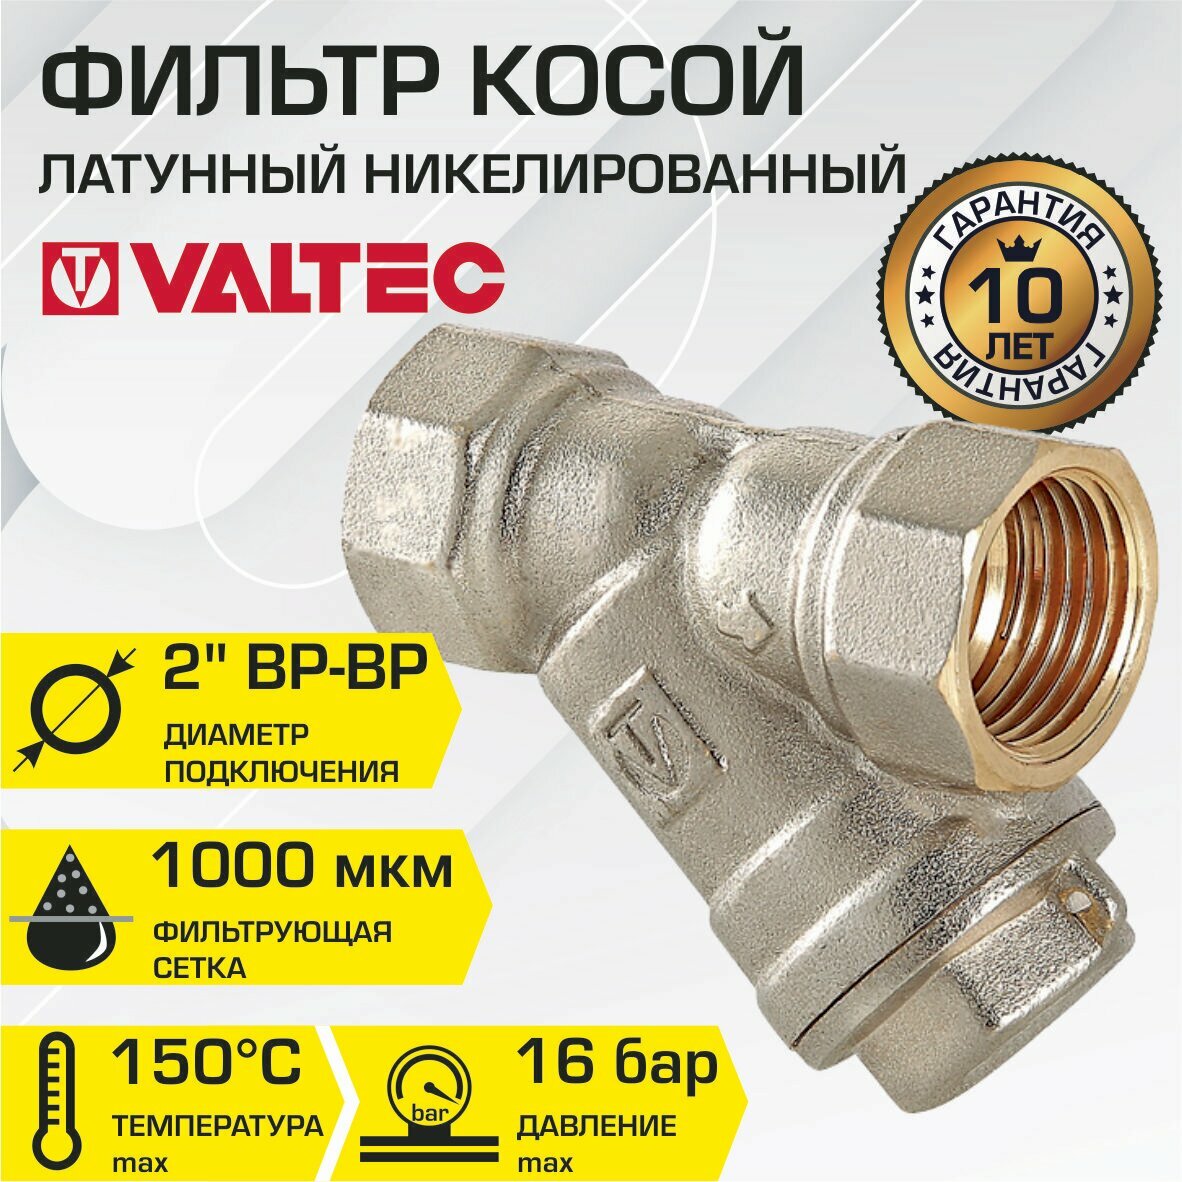 Фильтр косой VALTEC 2" VT.192. N.09 сетчатый для грубой механической очистки воды (грязевик)